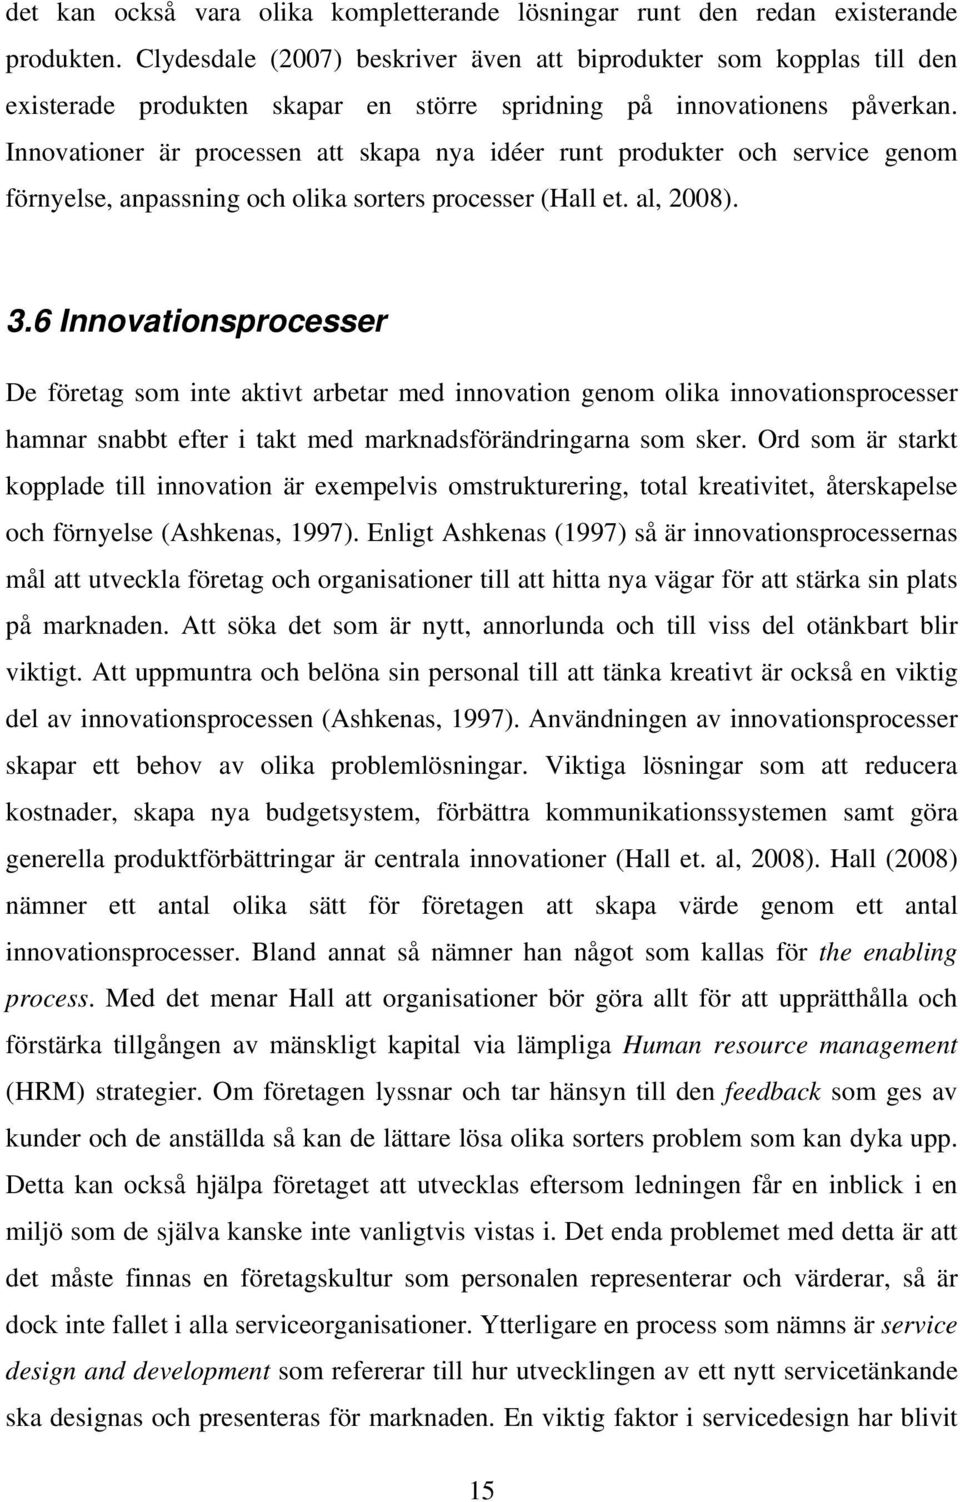 Innovationer är processen att skapa nya idéer runt produkter och service genom förnyelse, anpassning och olika sorters processer (Hall et. al, 2008). 3.